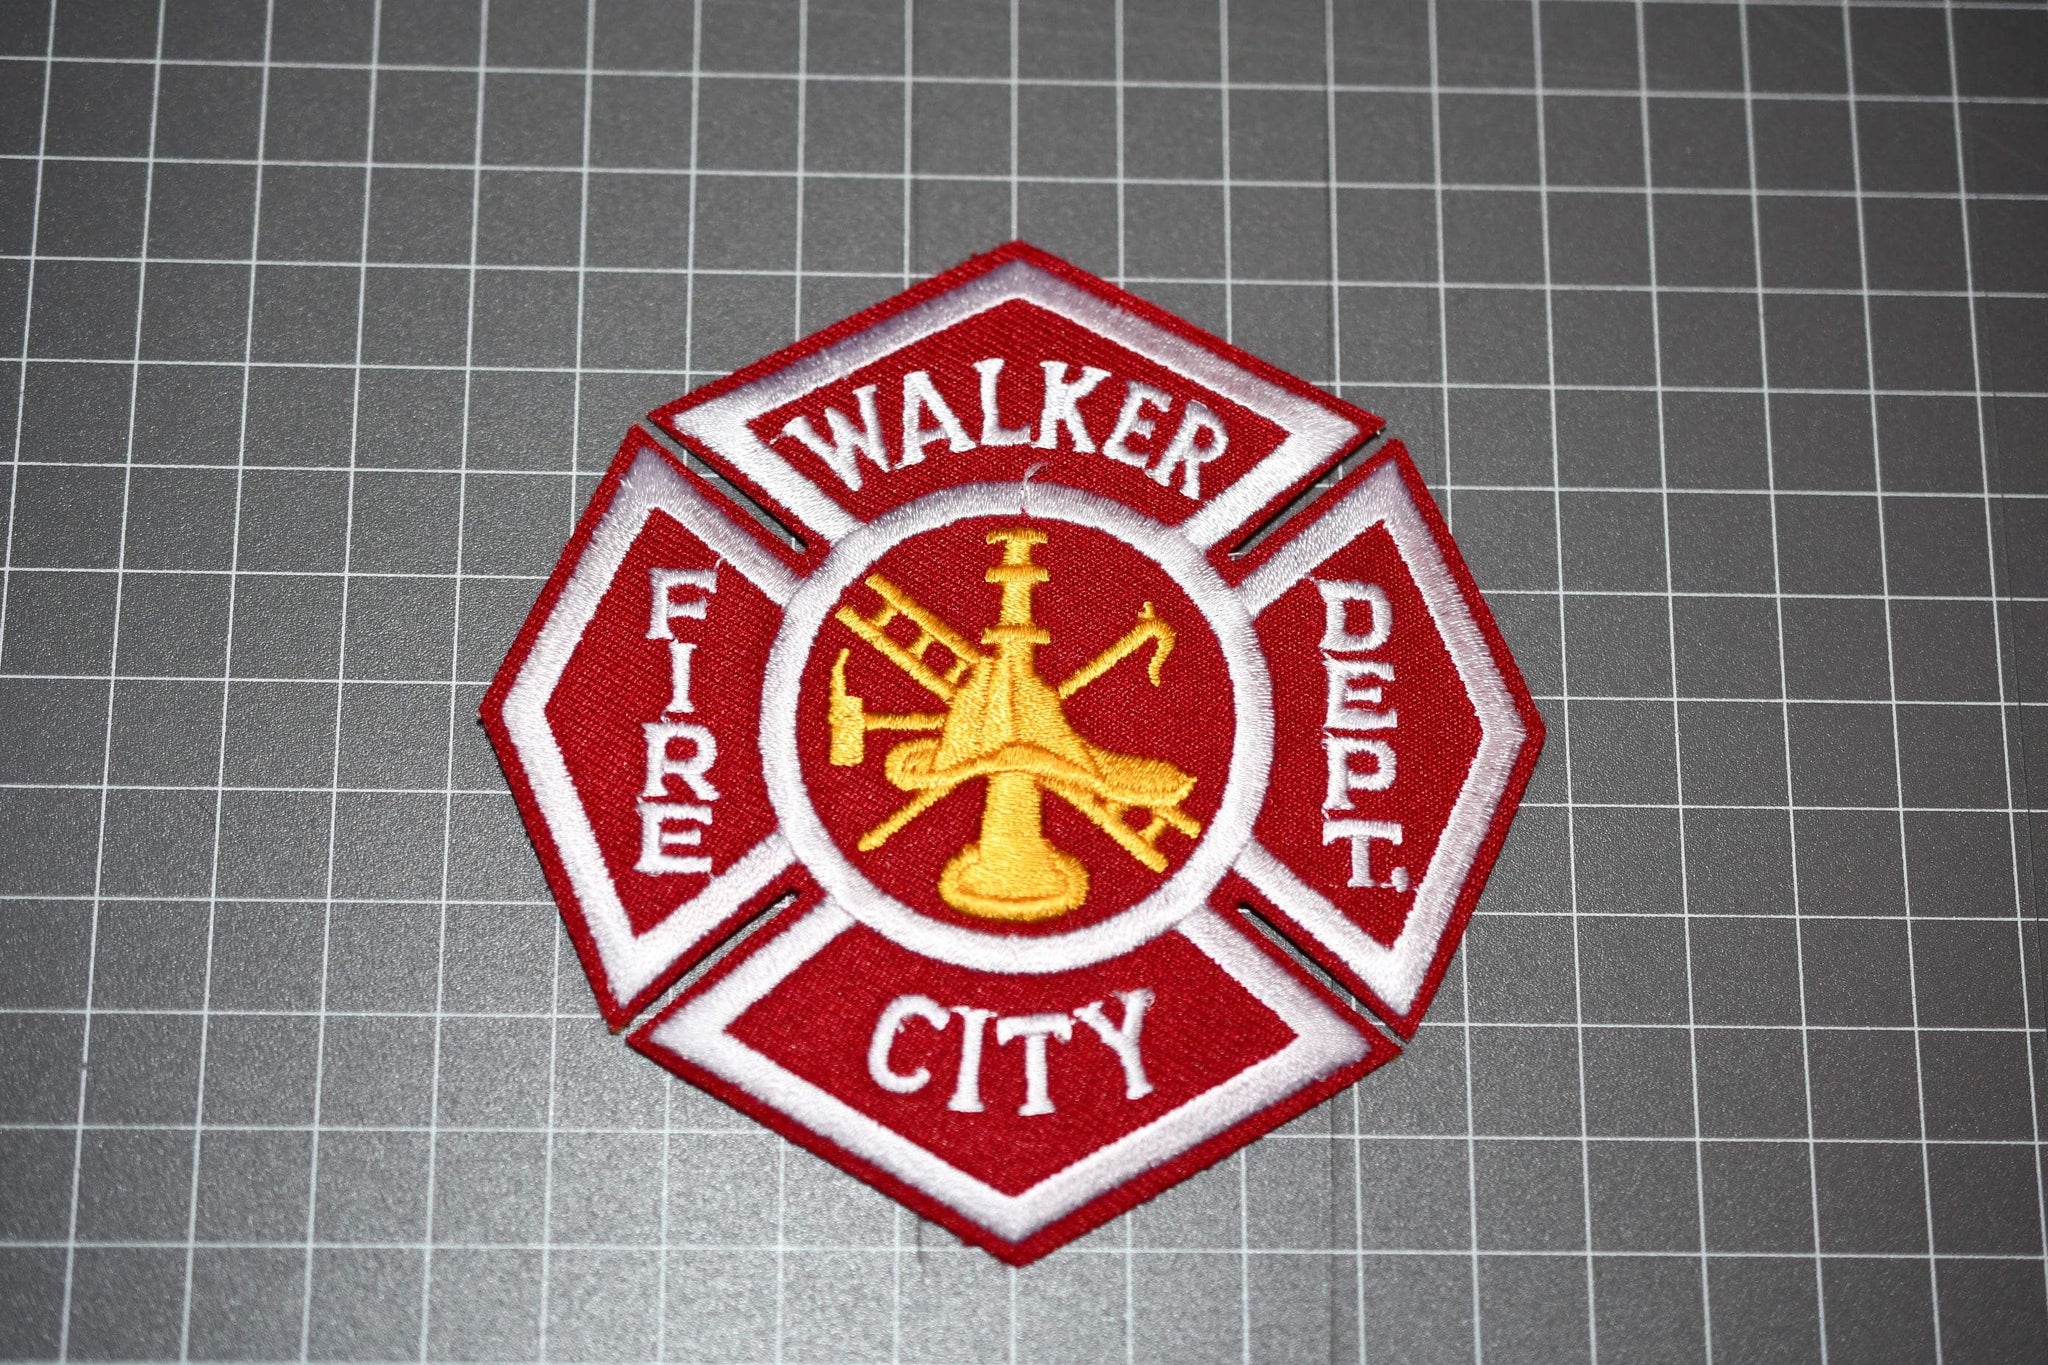 Walker City Michigan Fire Department Patch (B1)